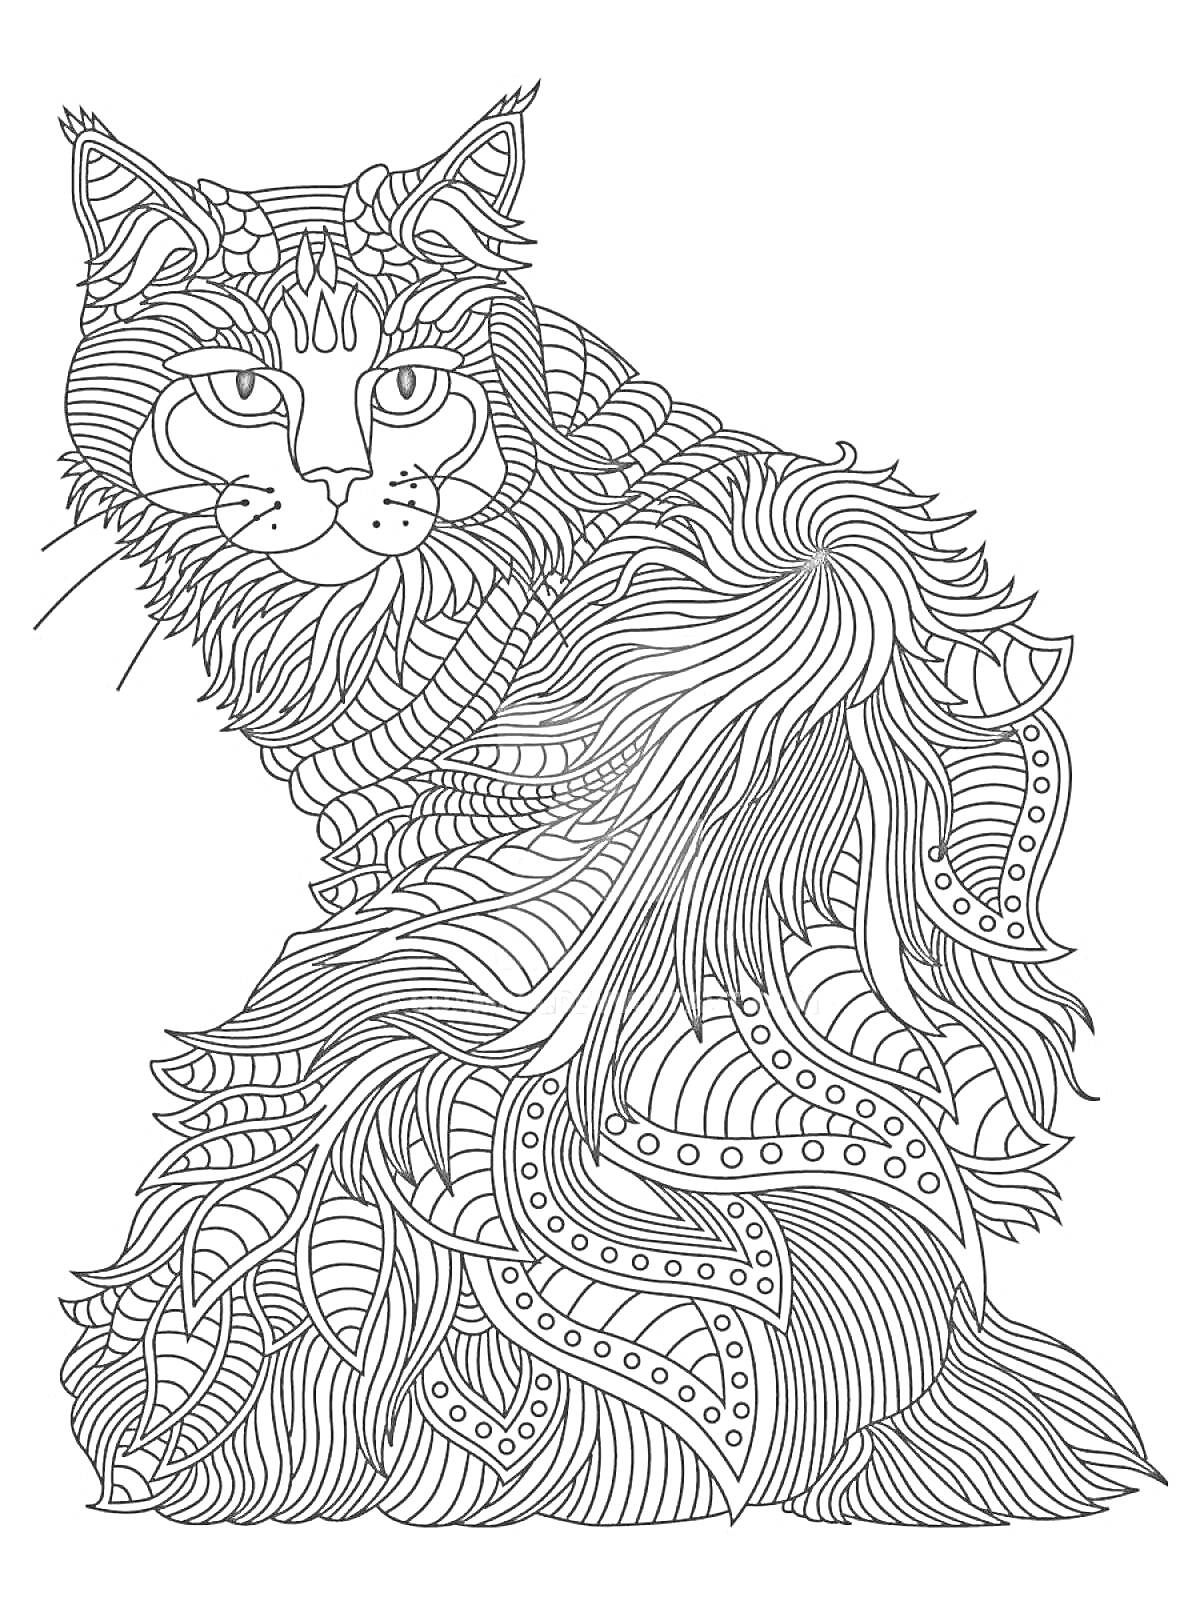 Раскраска Кошка с детализированным узором на шерсти